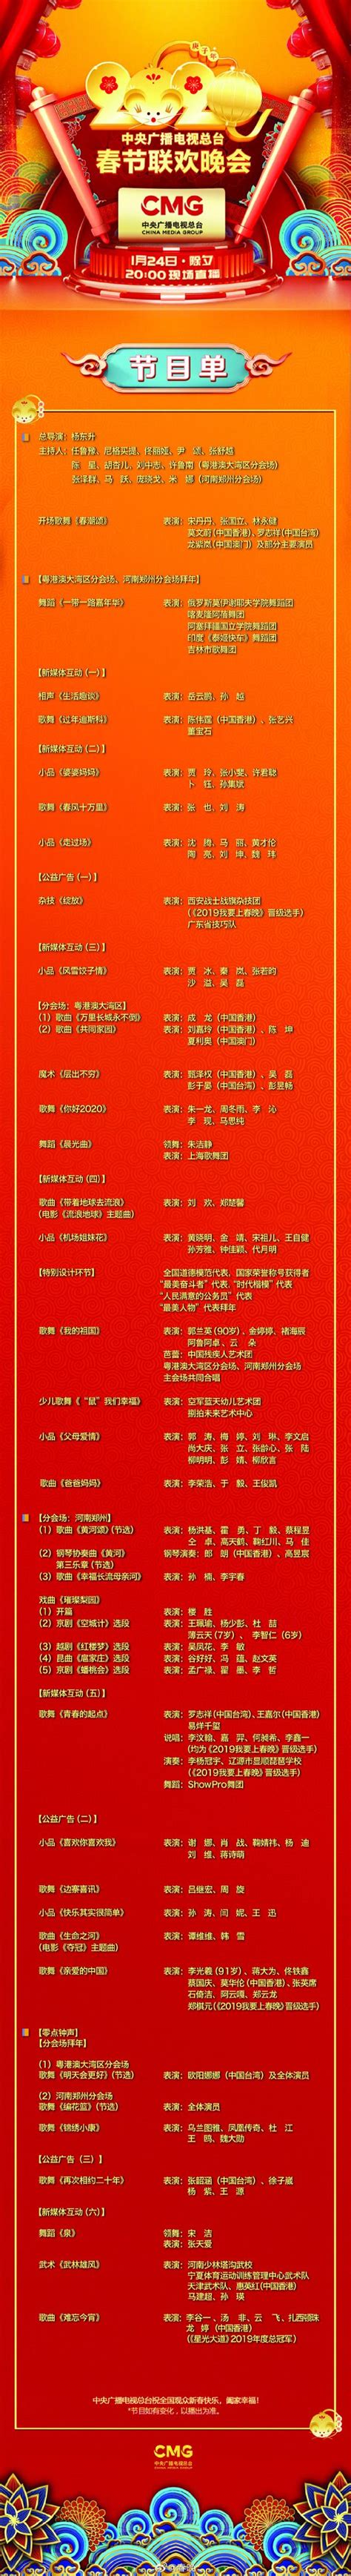 2020央视春晚节目单出炉 宋丹丹张国立歌舞开场_手机新浪网